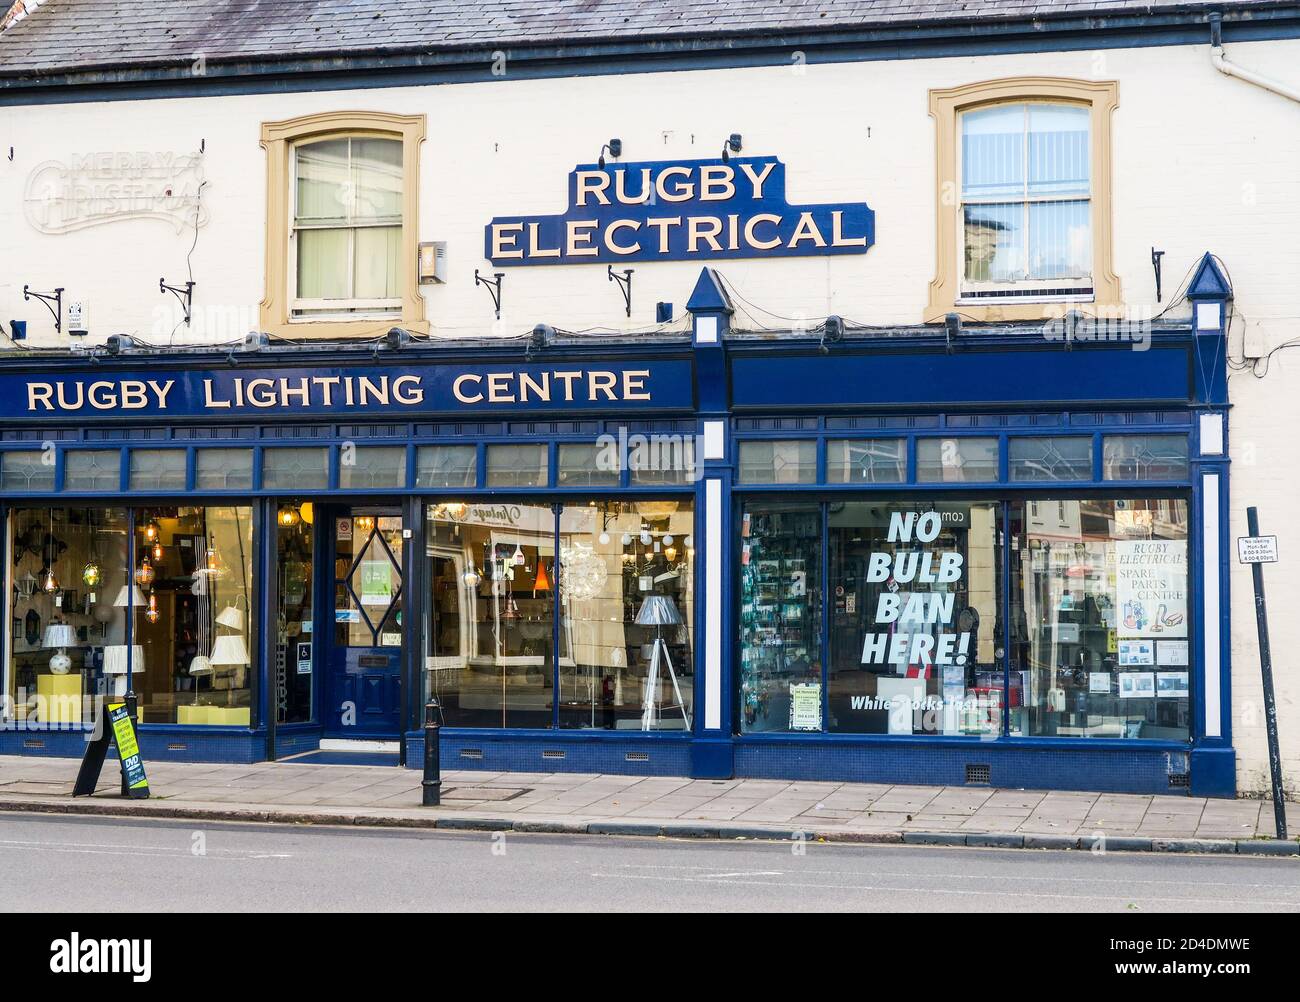 Centre d'éclairage Rugby. Banque D'Images